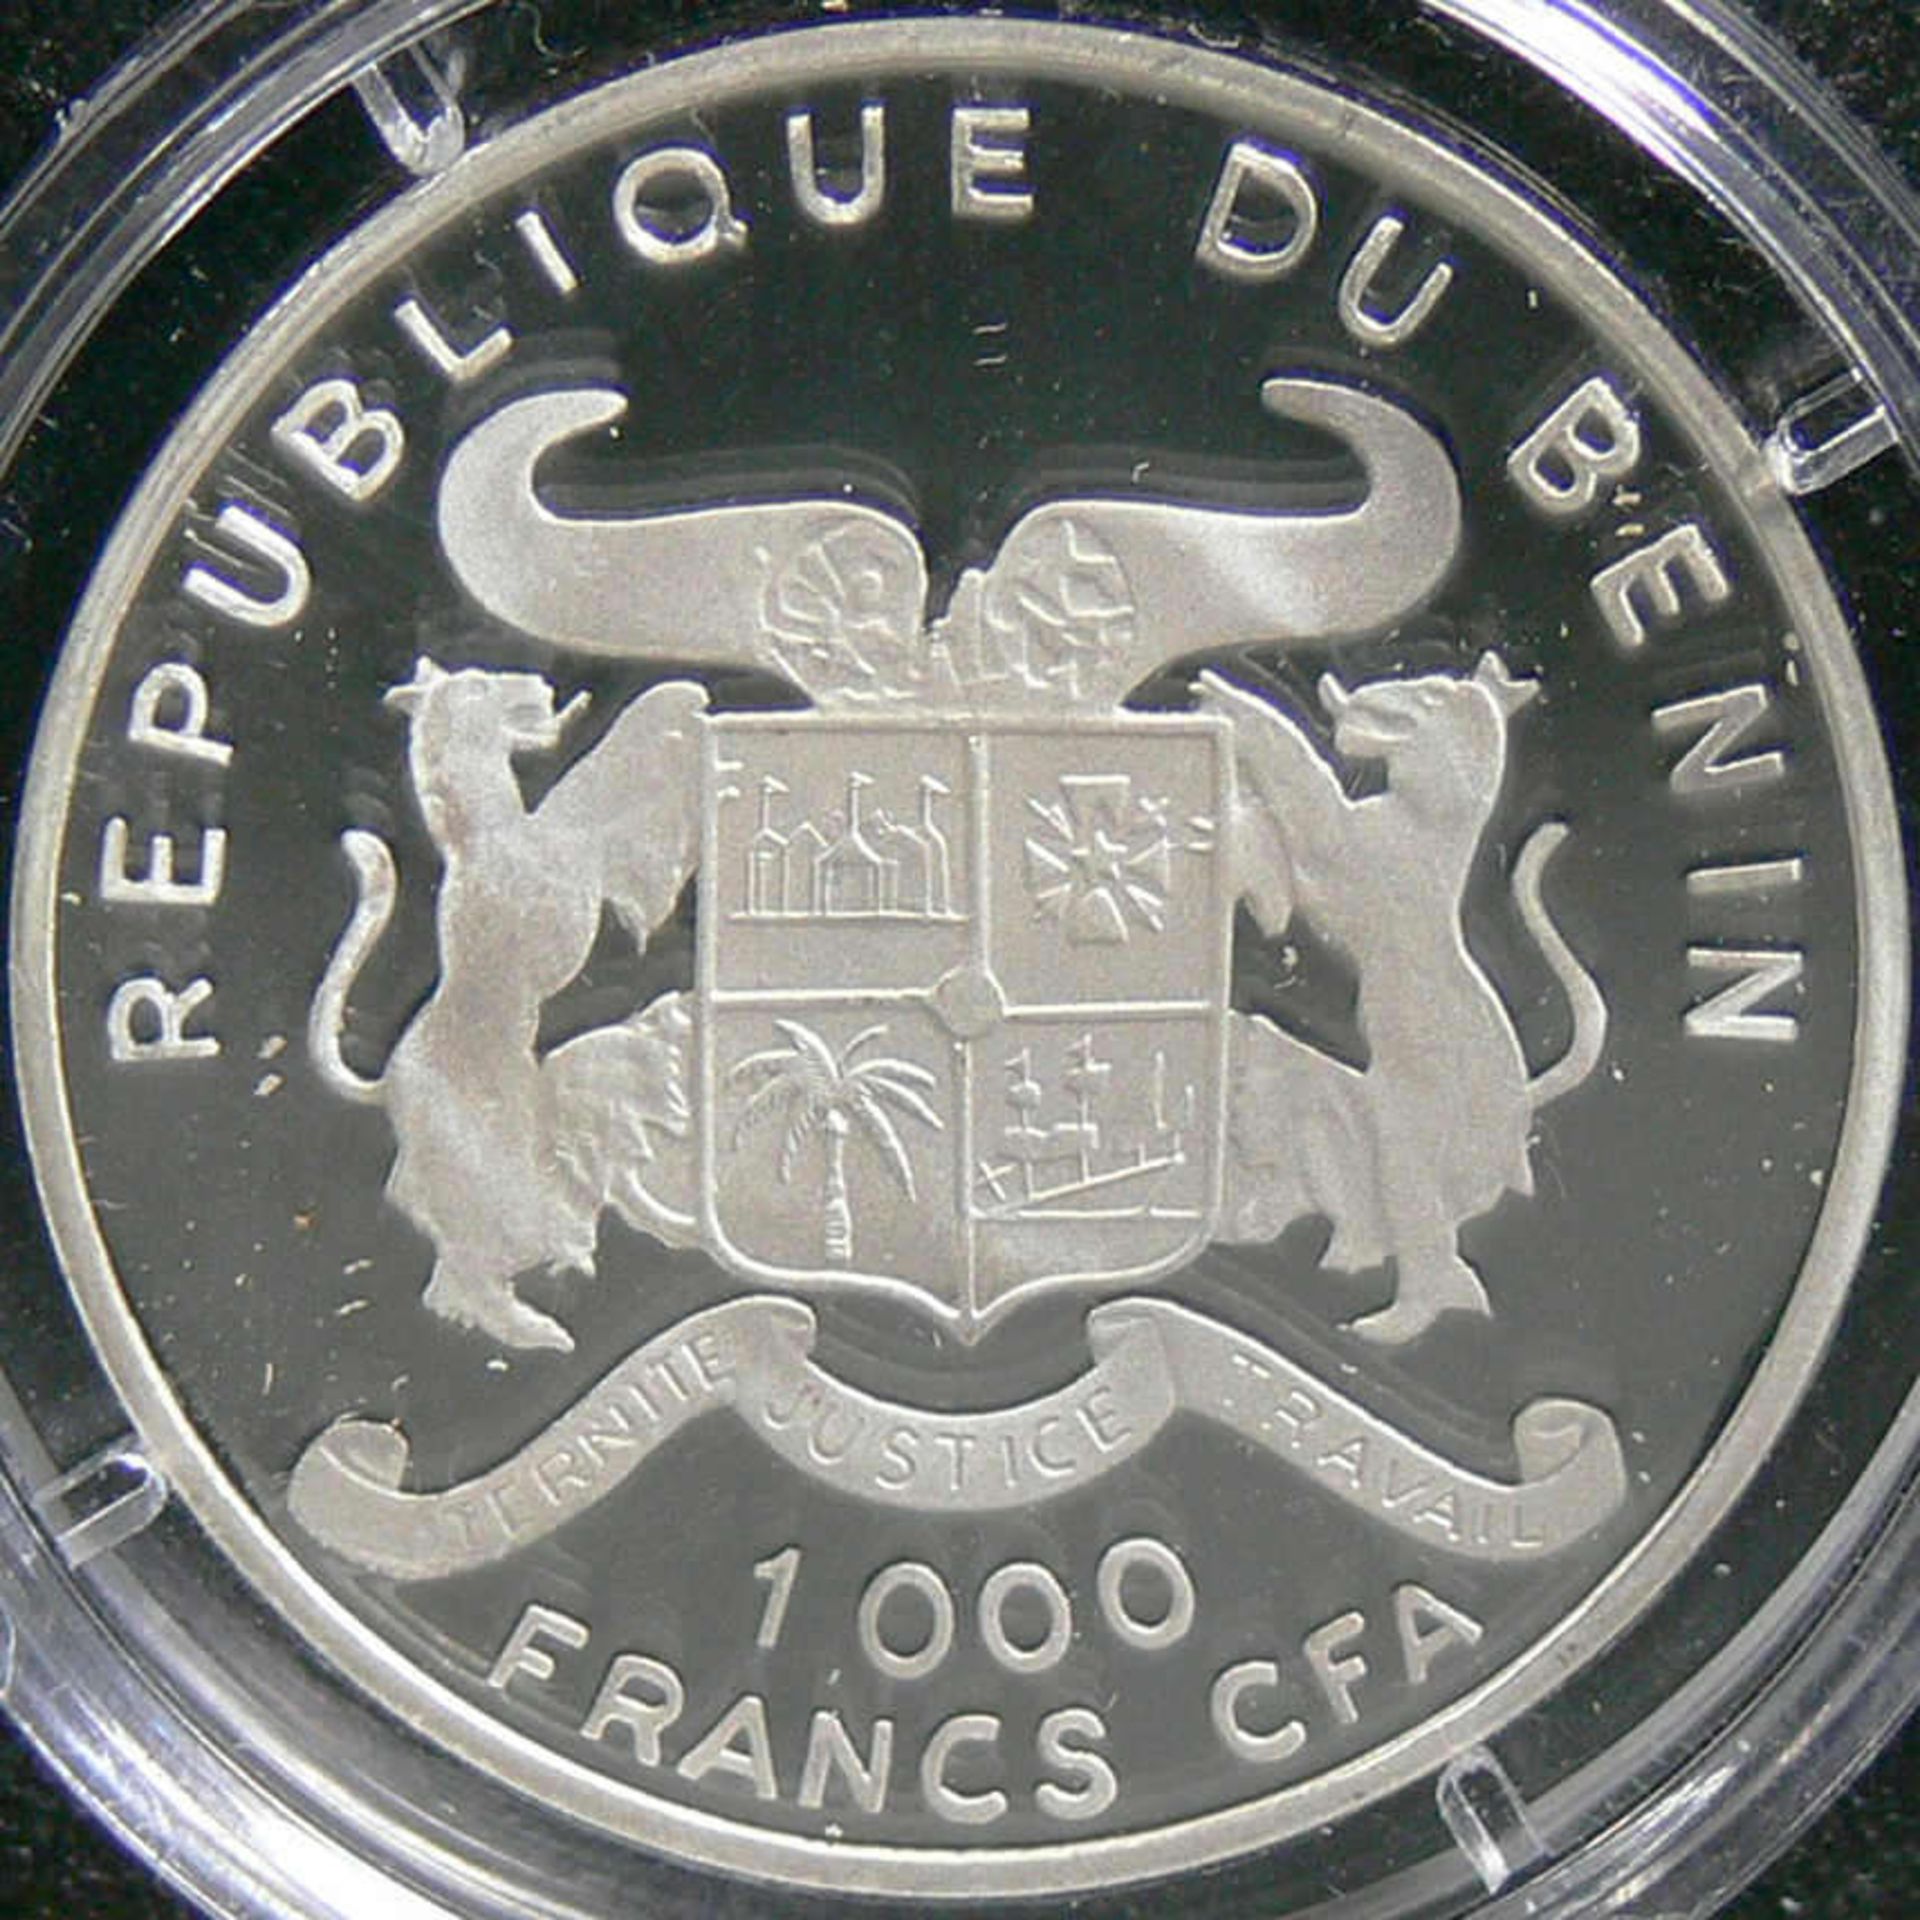 Benin 2000, 1000 Francs - Silbermünze "Das erste Dampfschiff", Silber 999, Gewicht: 15 g, - Bild 2 aus 2